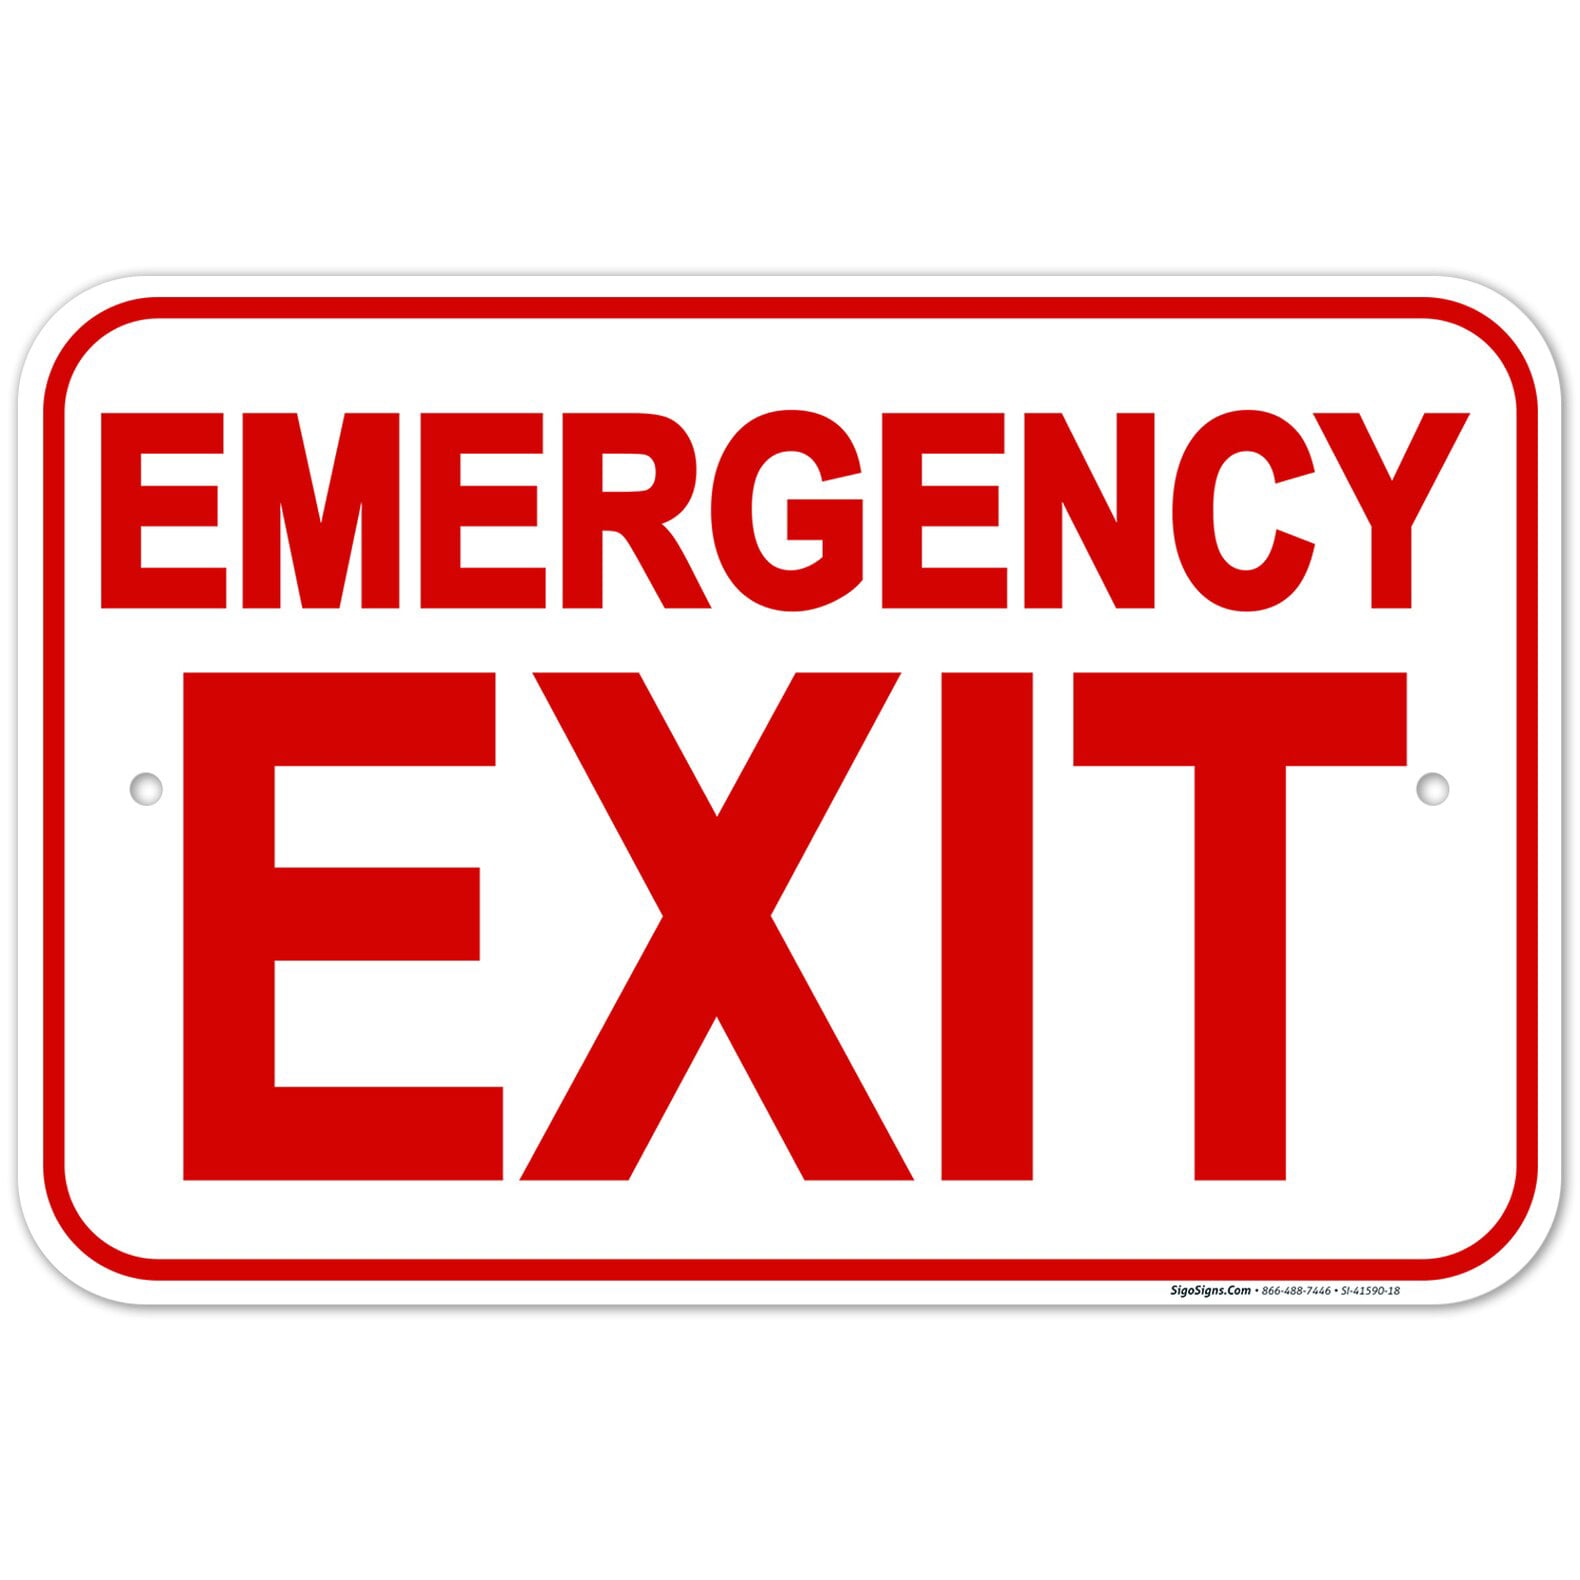 Emergency Exit Sign - Walmart.com - Walmart.com